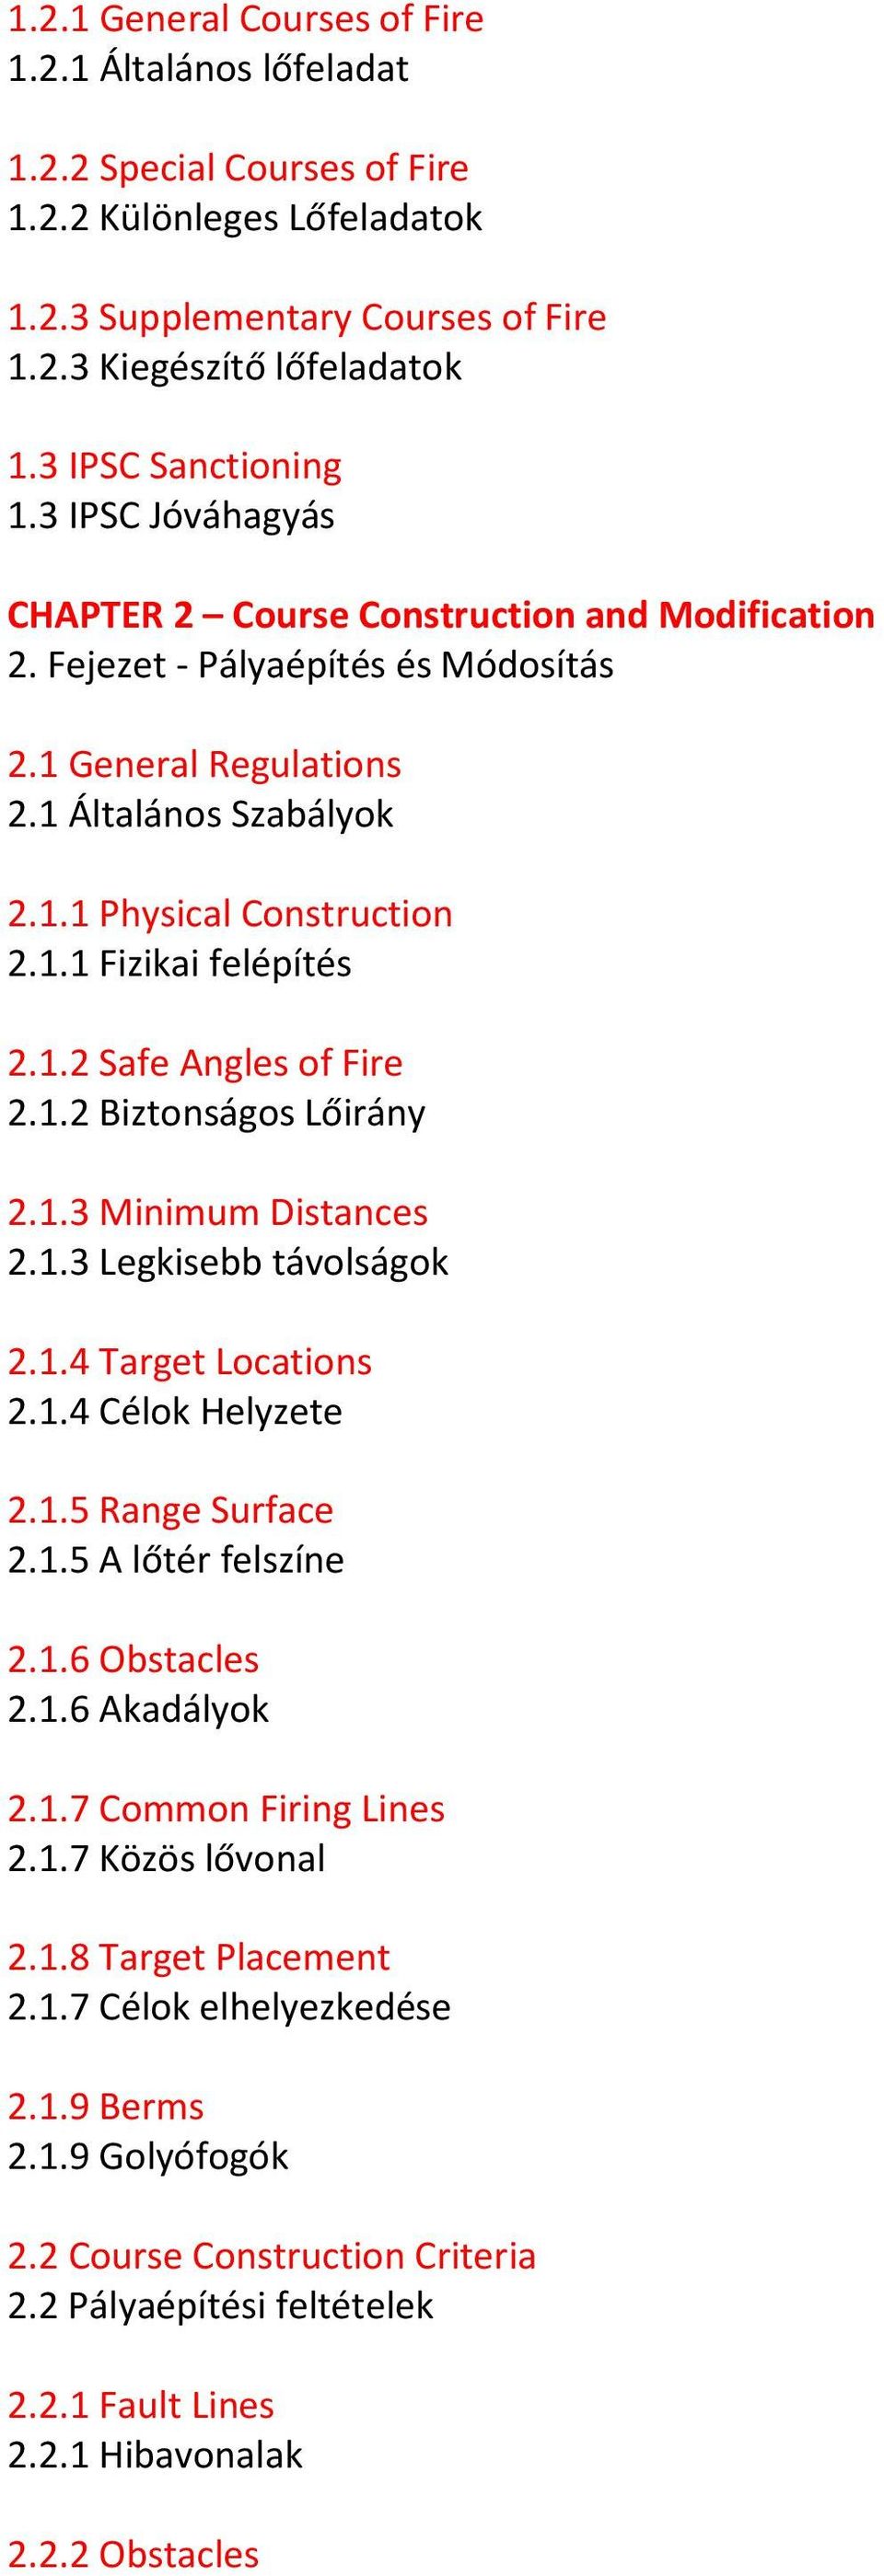 1.1 Fizikai felépítés 2.1.2 Safe Angles of Fire 2.1.2 Biztonságos Lőirány 2.1.3 Minimum Distances 2.1.3 Legkisebb távolságok 2.1.4 Target Locations 2.1.4 Célok Helyzete 2.1.5 Range Surface 2.1.5 A lőtér felszíne 2.